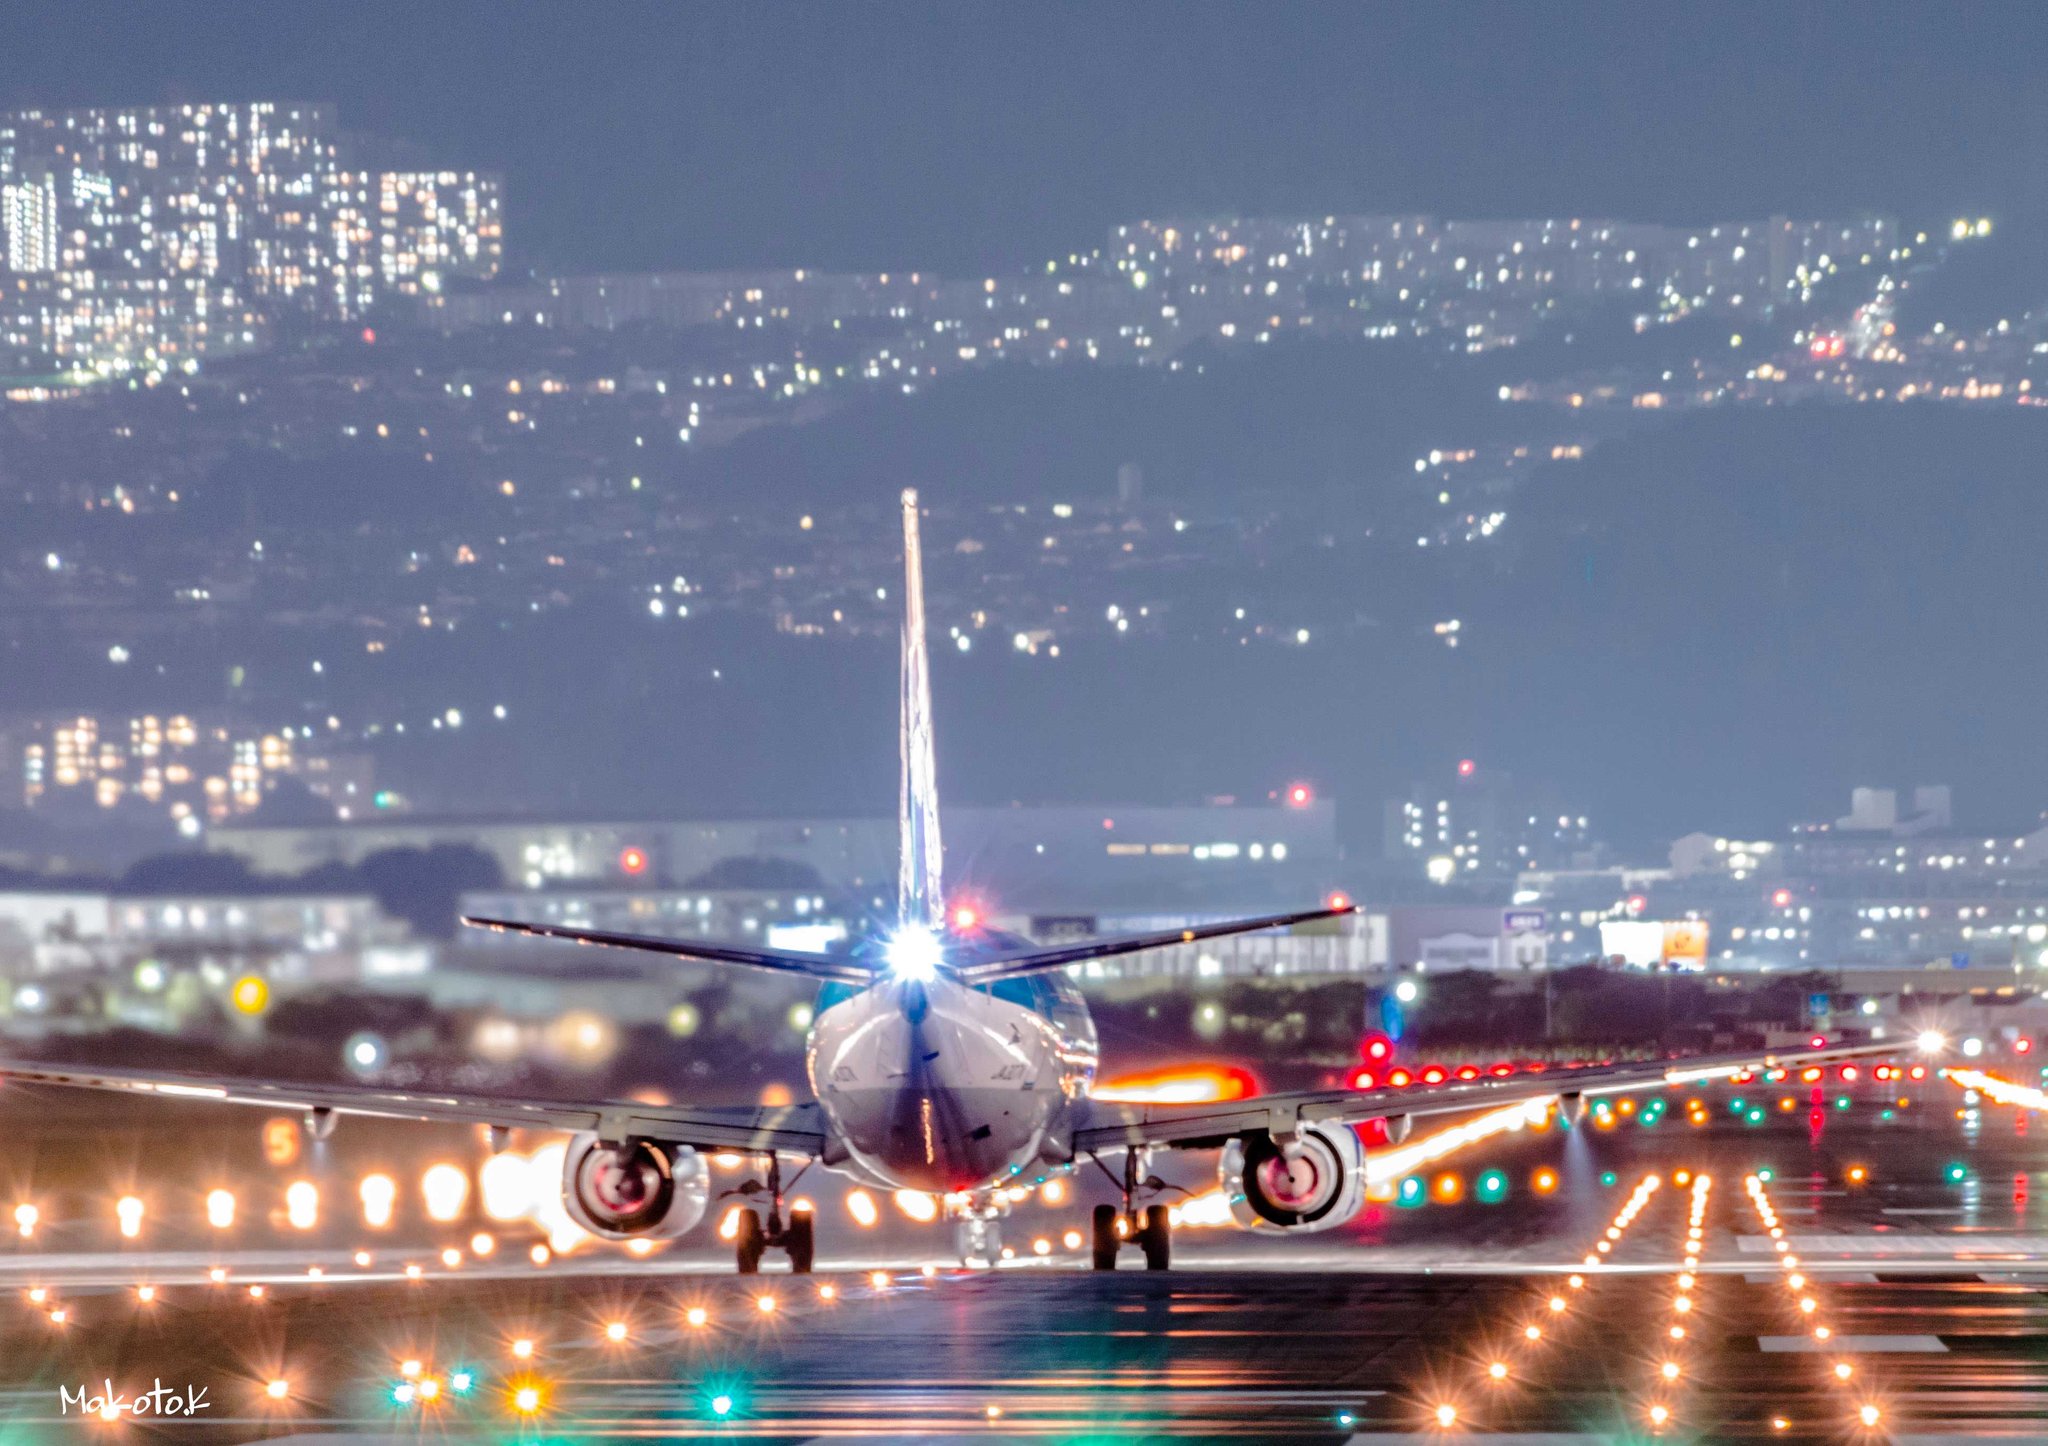 かけがわ まこと Twitterissa 伊丹空港の離陸写真の現時点でのベストショット４枚をまとめてみました 夜景も綺麗だし真上に飛行機が通る迫力もあるからカメラがなくても是非ここには遊びに行ってみて欲しい 飛行機 夜景 伊丹空港 大阪国際空港 Itm 写真好きな